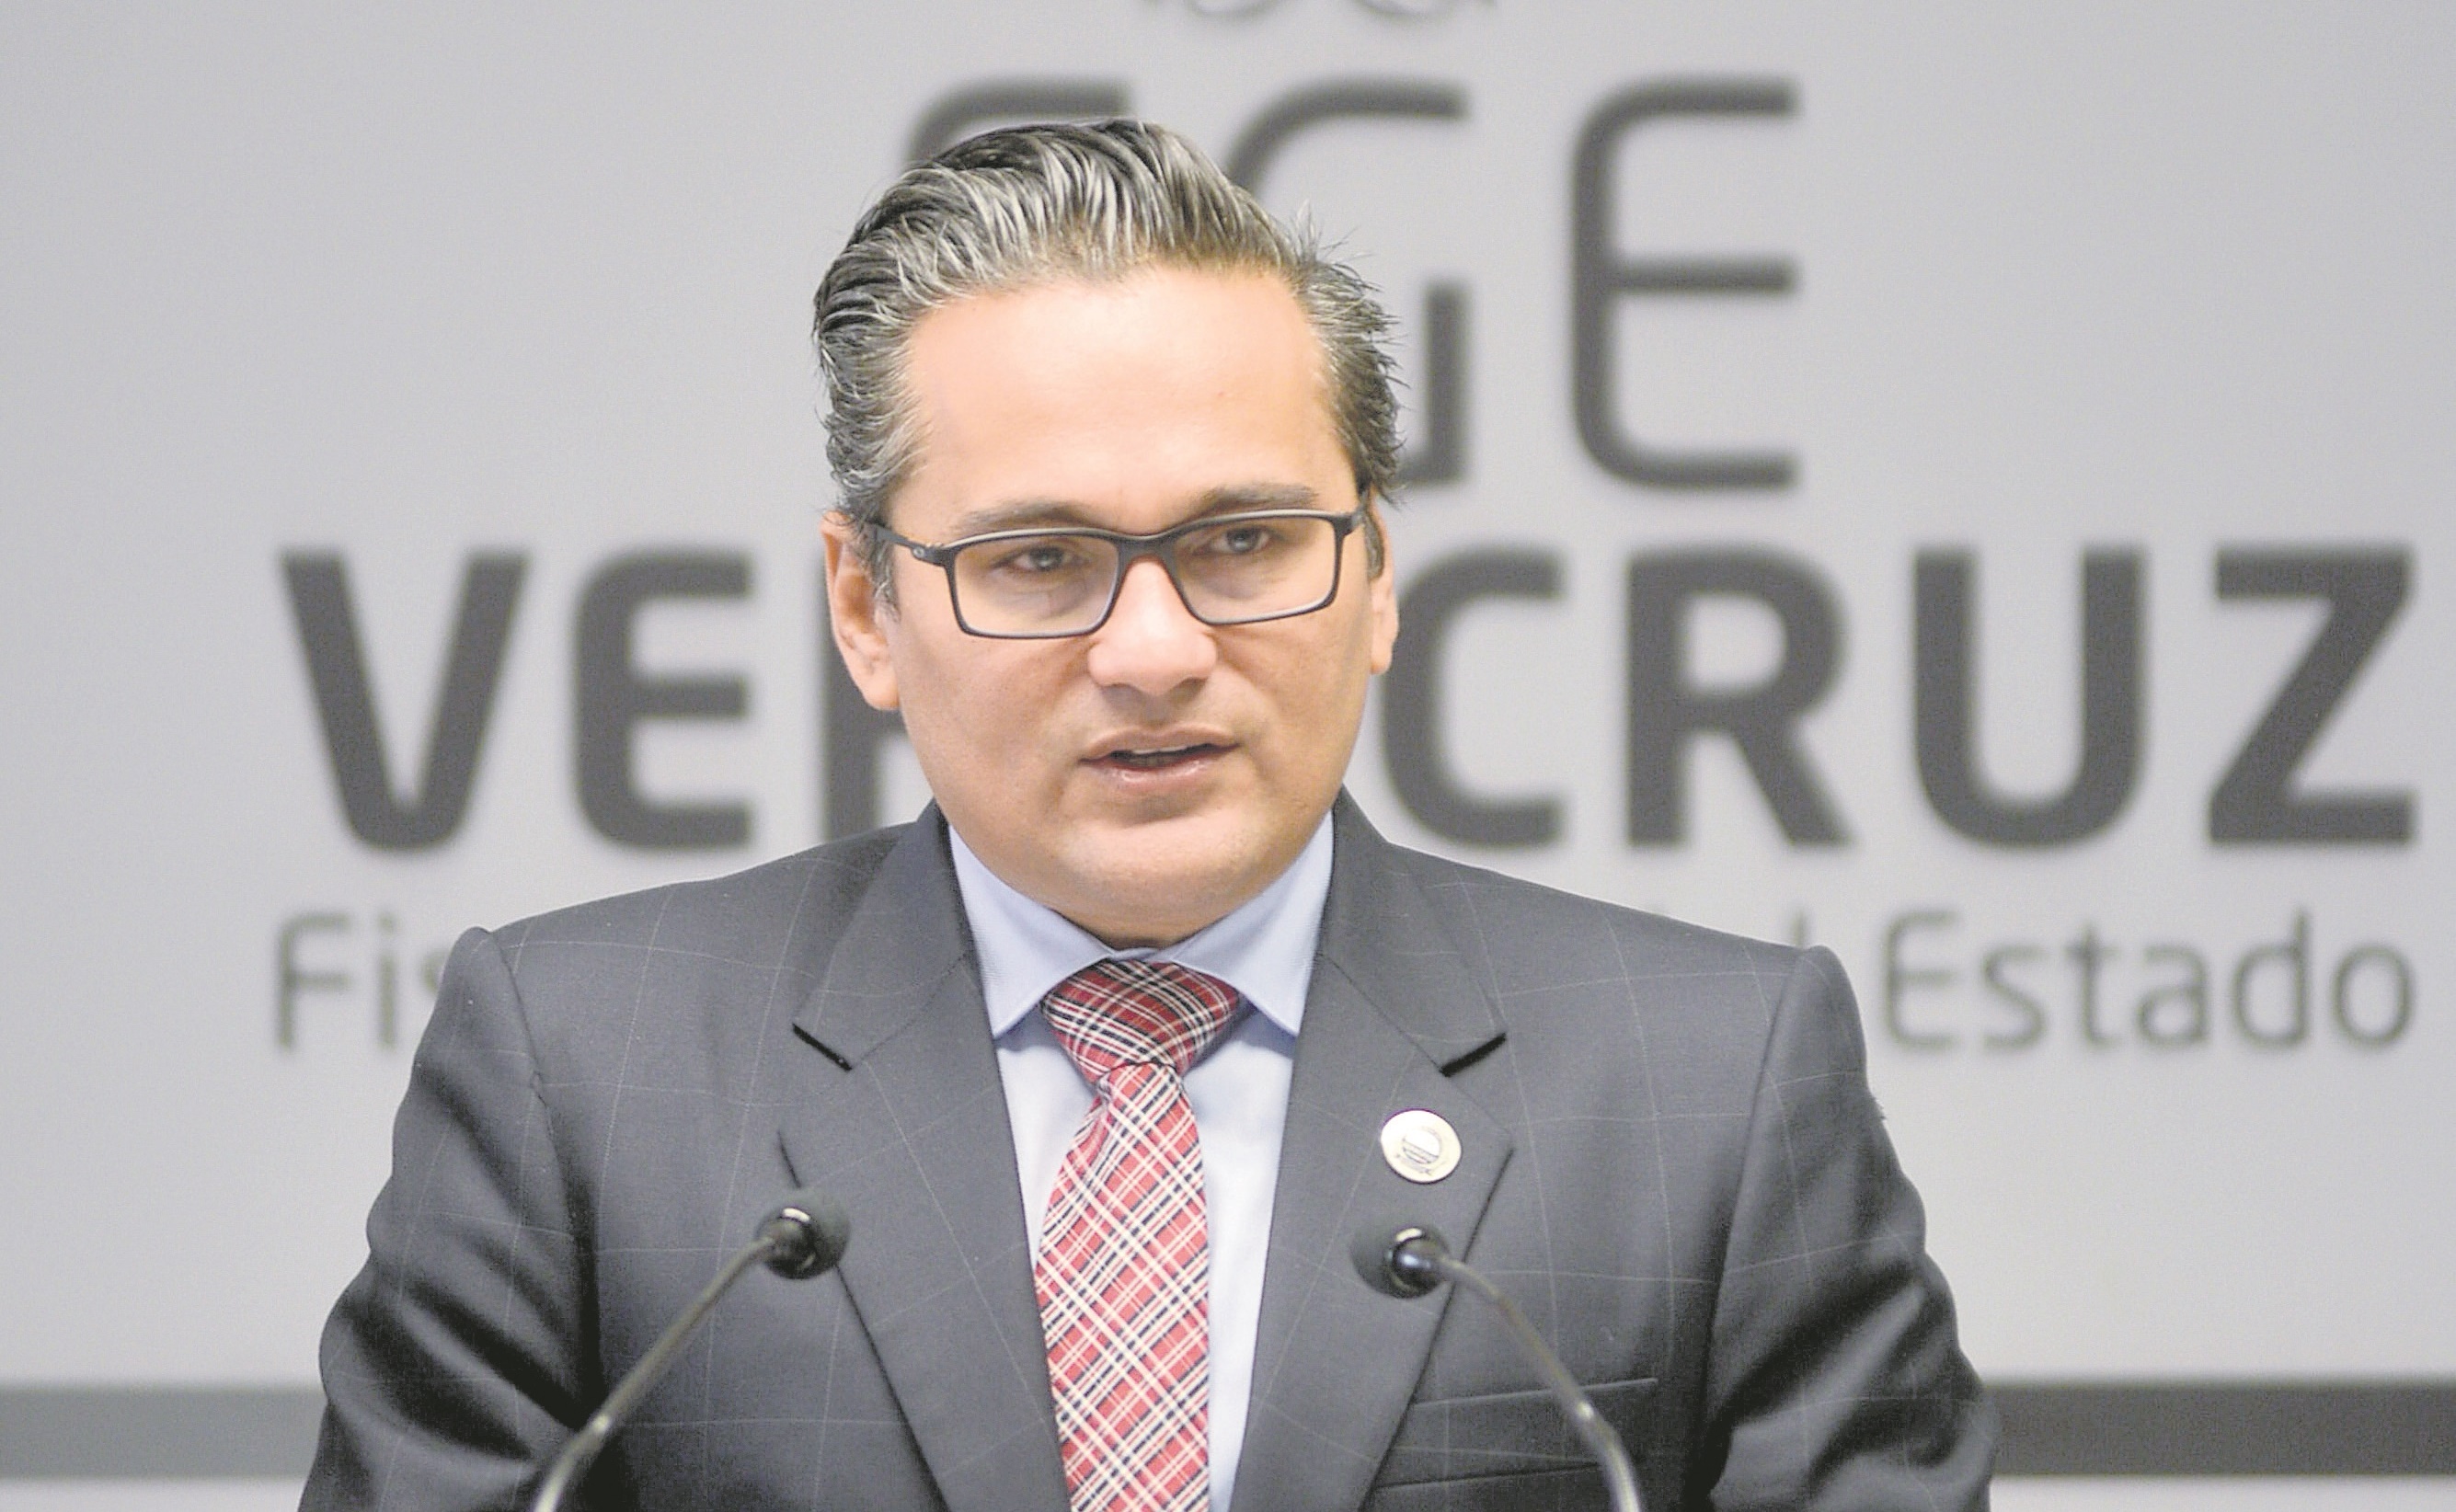 Fiscal de Veracruz pone el mal ejemplo